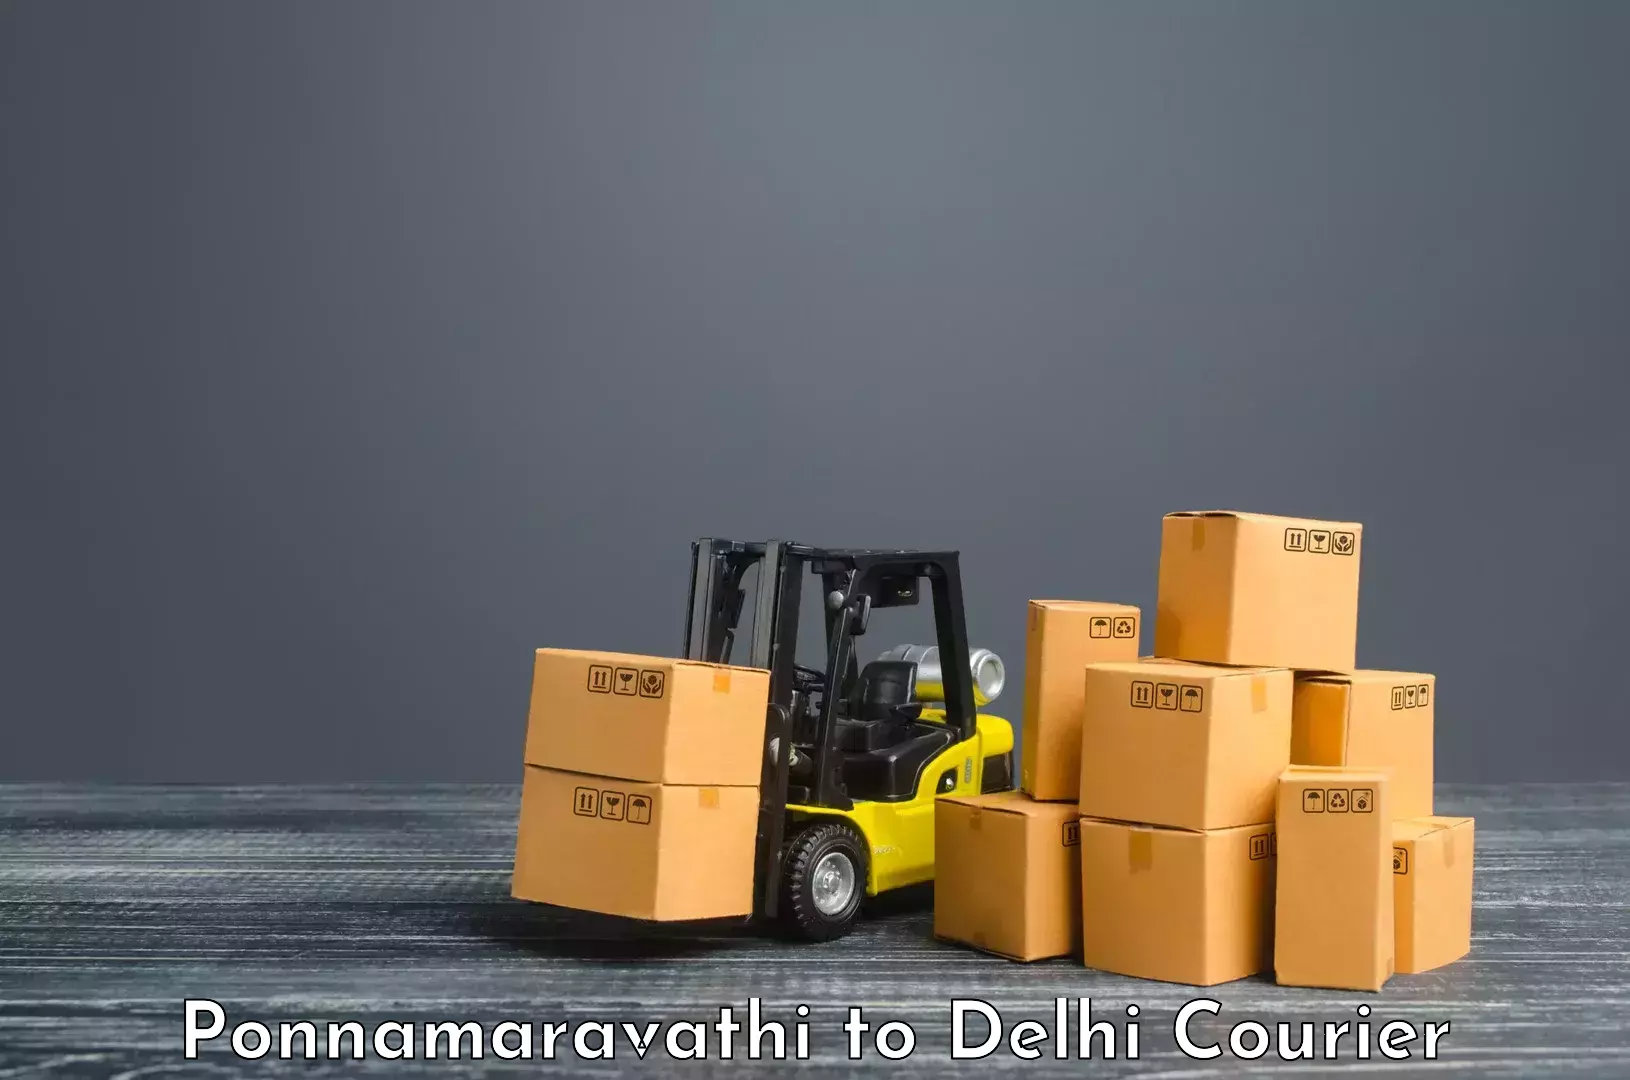 Next-day delivery options Ponnamaravathi to Jawaharlal Nehru University New Delhi